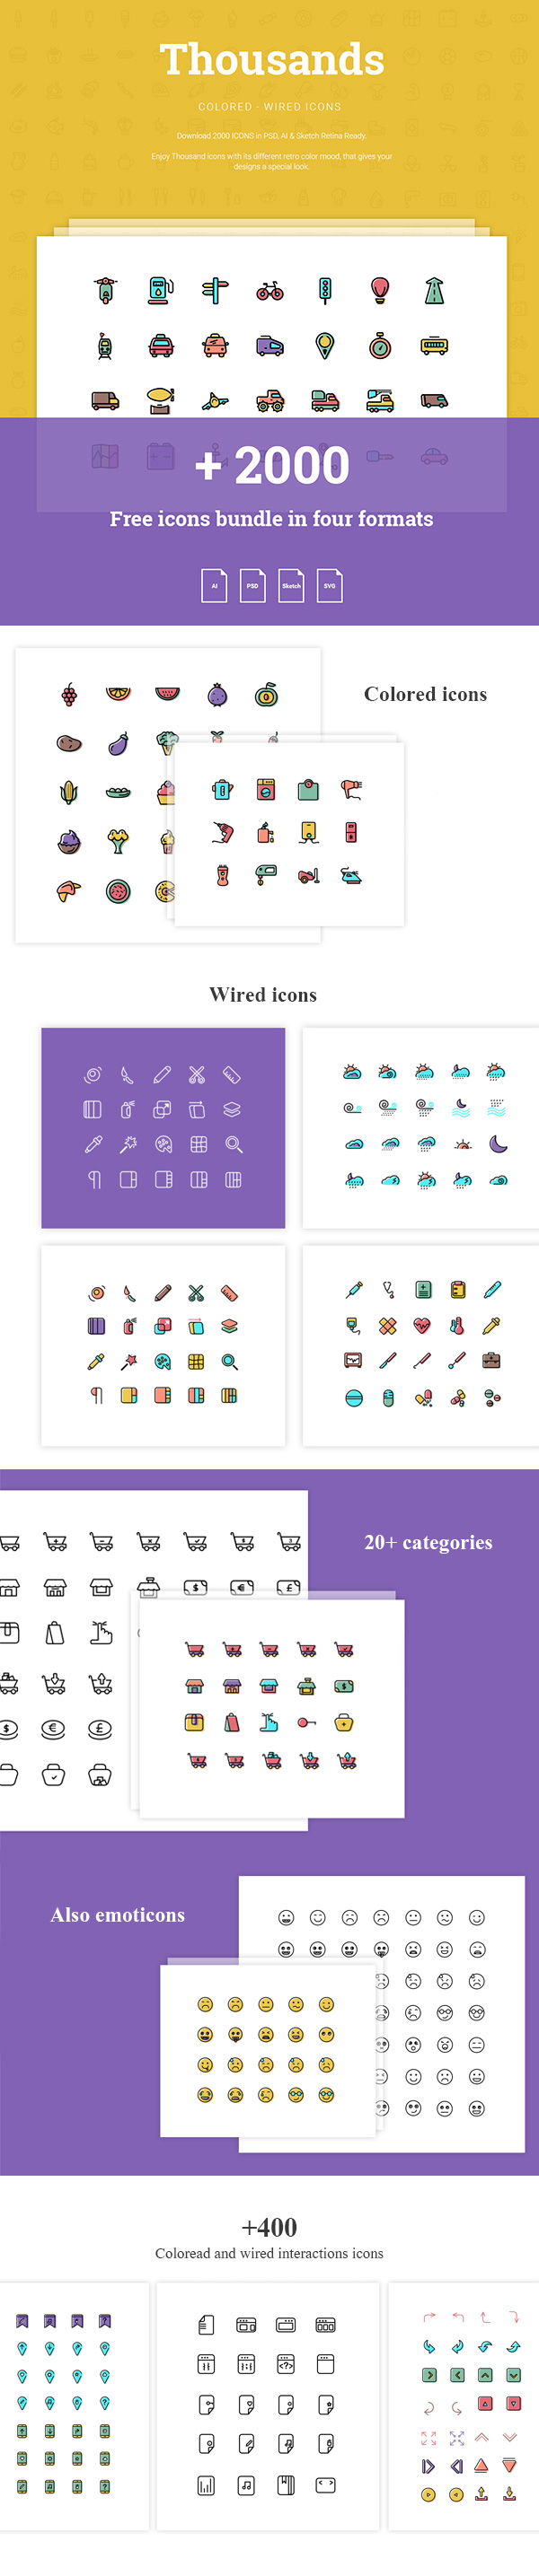 30+ nouvelles ressources gratuites pour vos designs (PSD, .AI, UI Kits, Mock-ups, photos, typos, etc...)